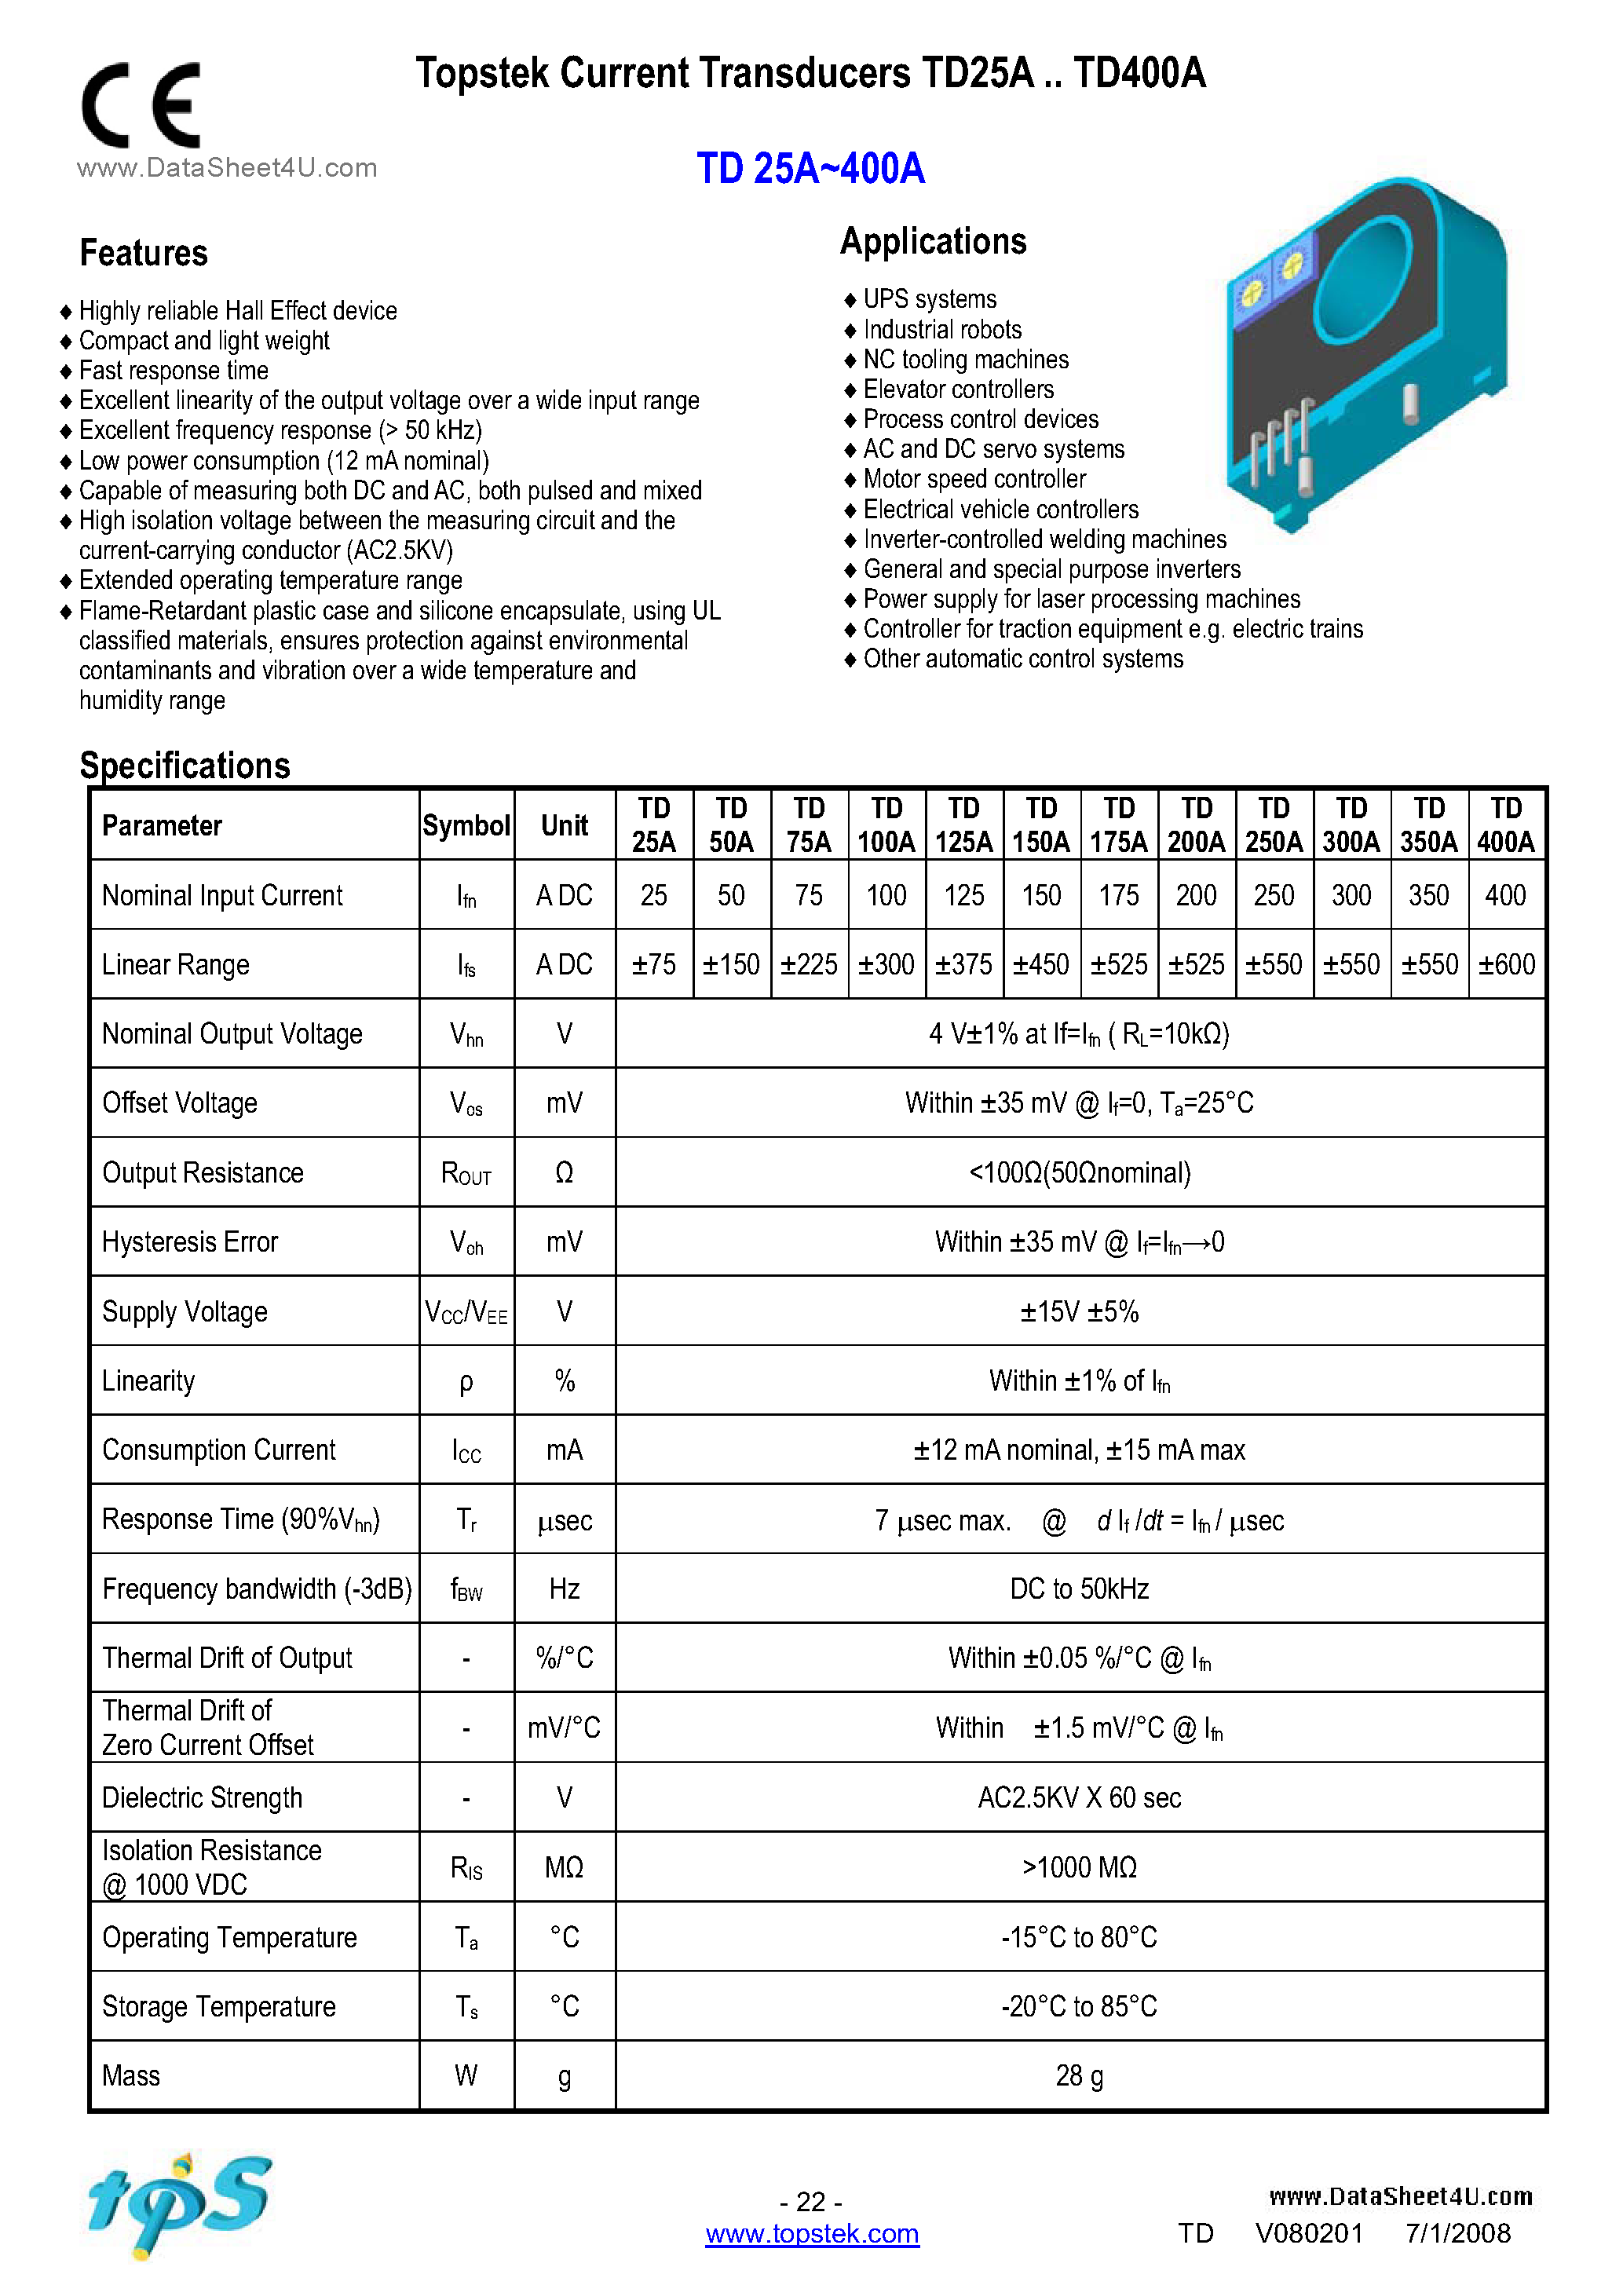 Даташит TD125A - Topstek Current Transducers страница 1